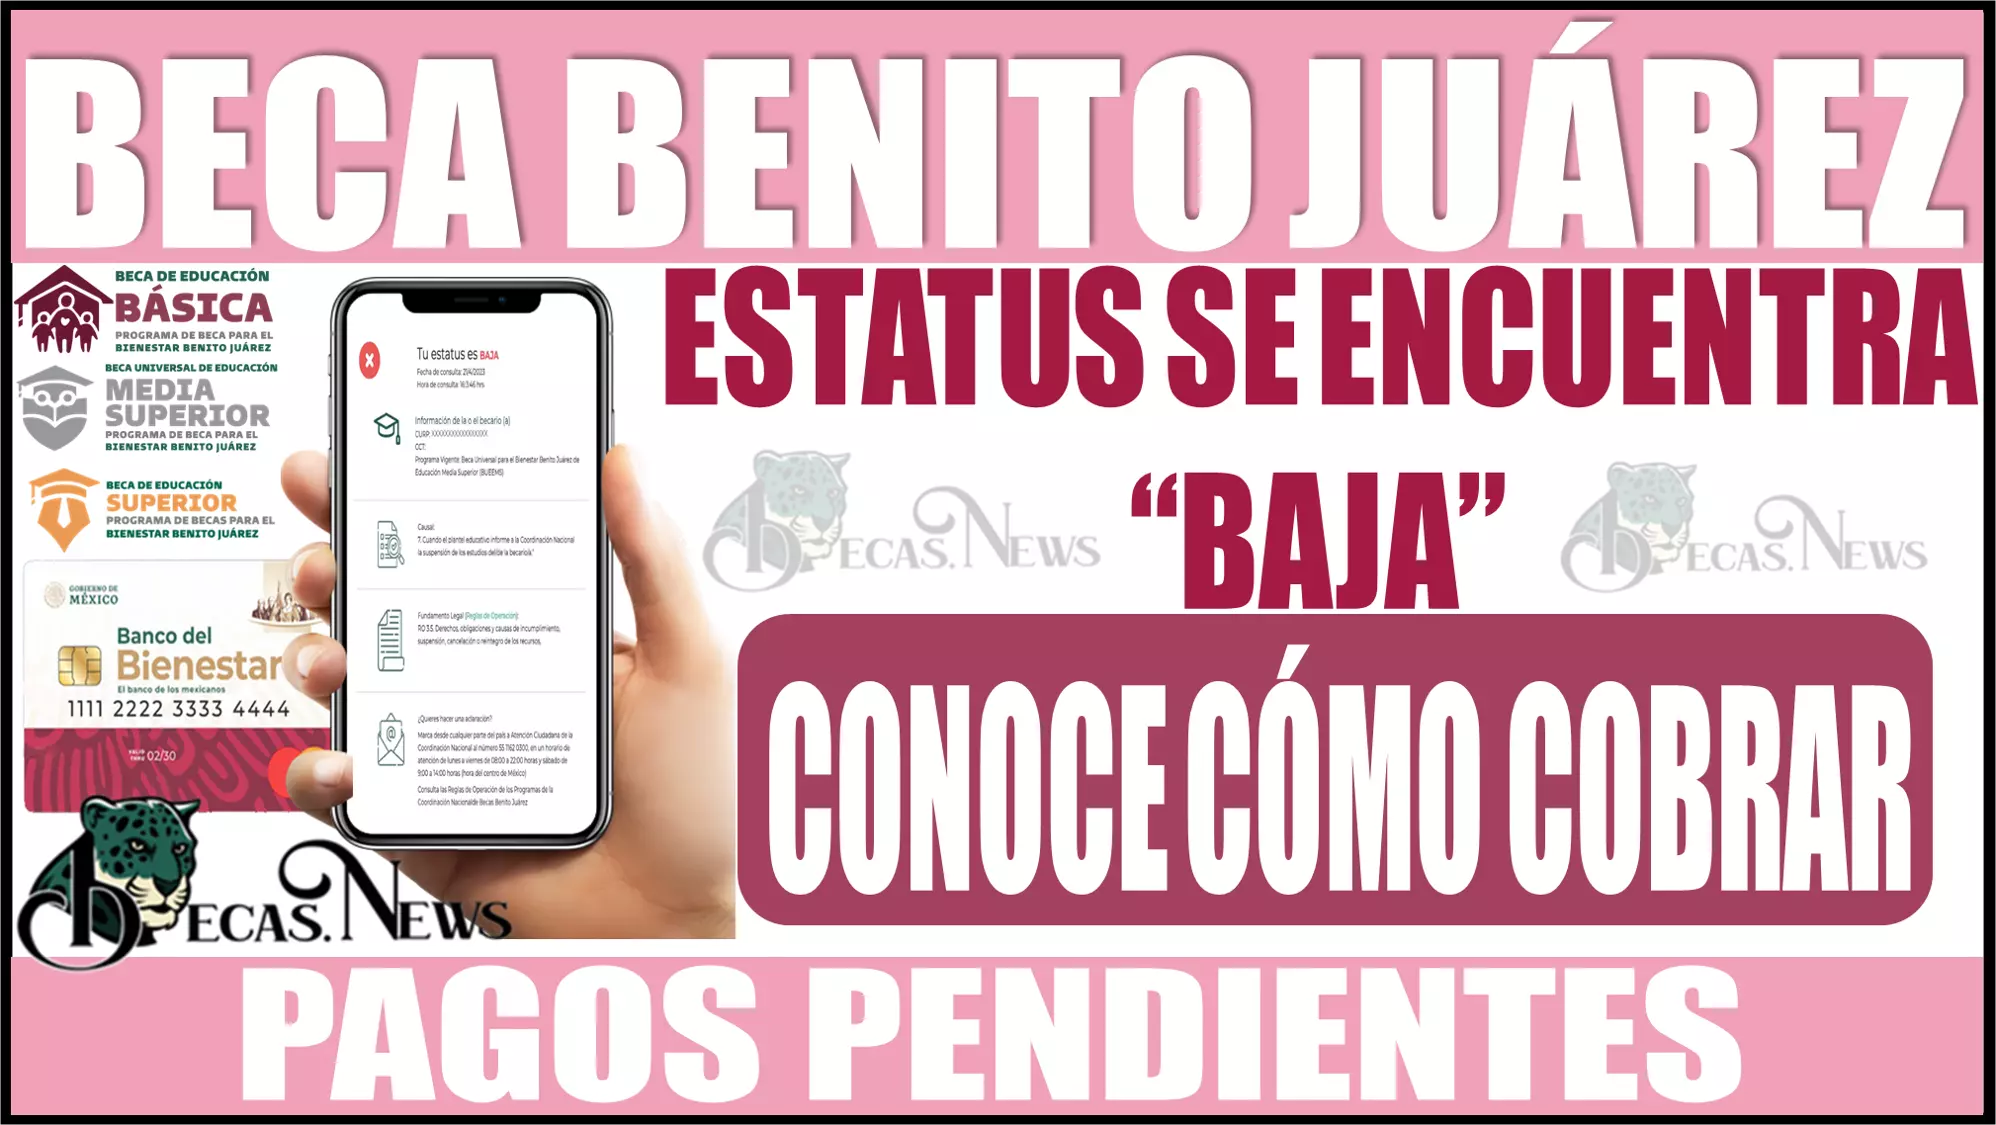 👩‍🎓👨‍🎓🤑💸🚨 Si eres becado de la Beca Benito Juárez y en tu Estatus se encuentra "BAJA", ¿Quieres saber si puedes cobrar tus pagos pendientes? 👩‍🎓👨‍🎓🤑💸🚨